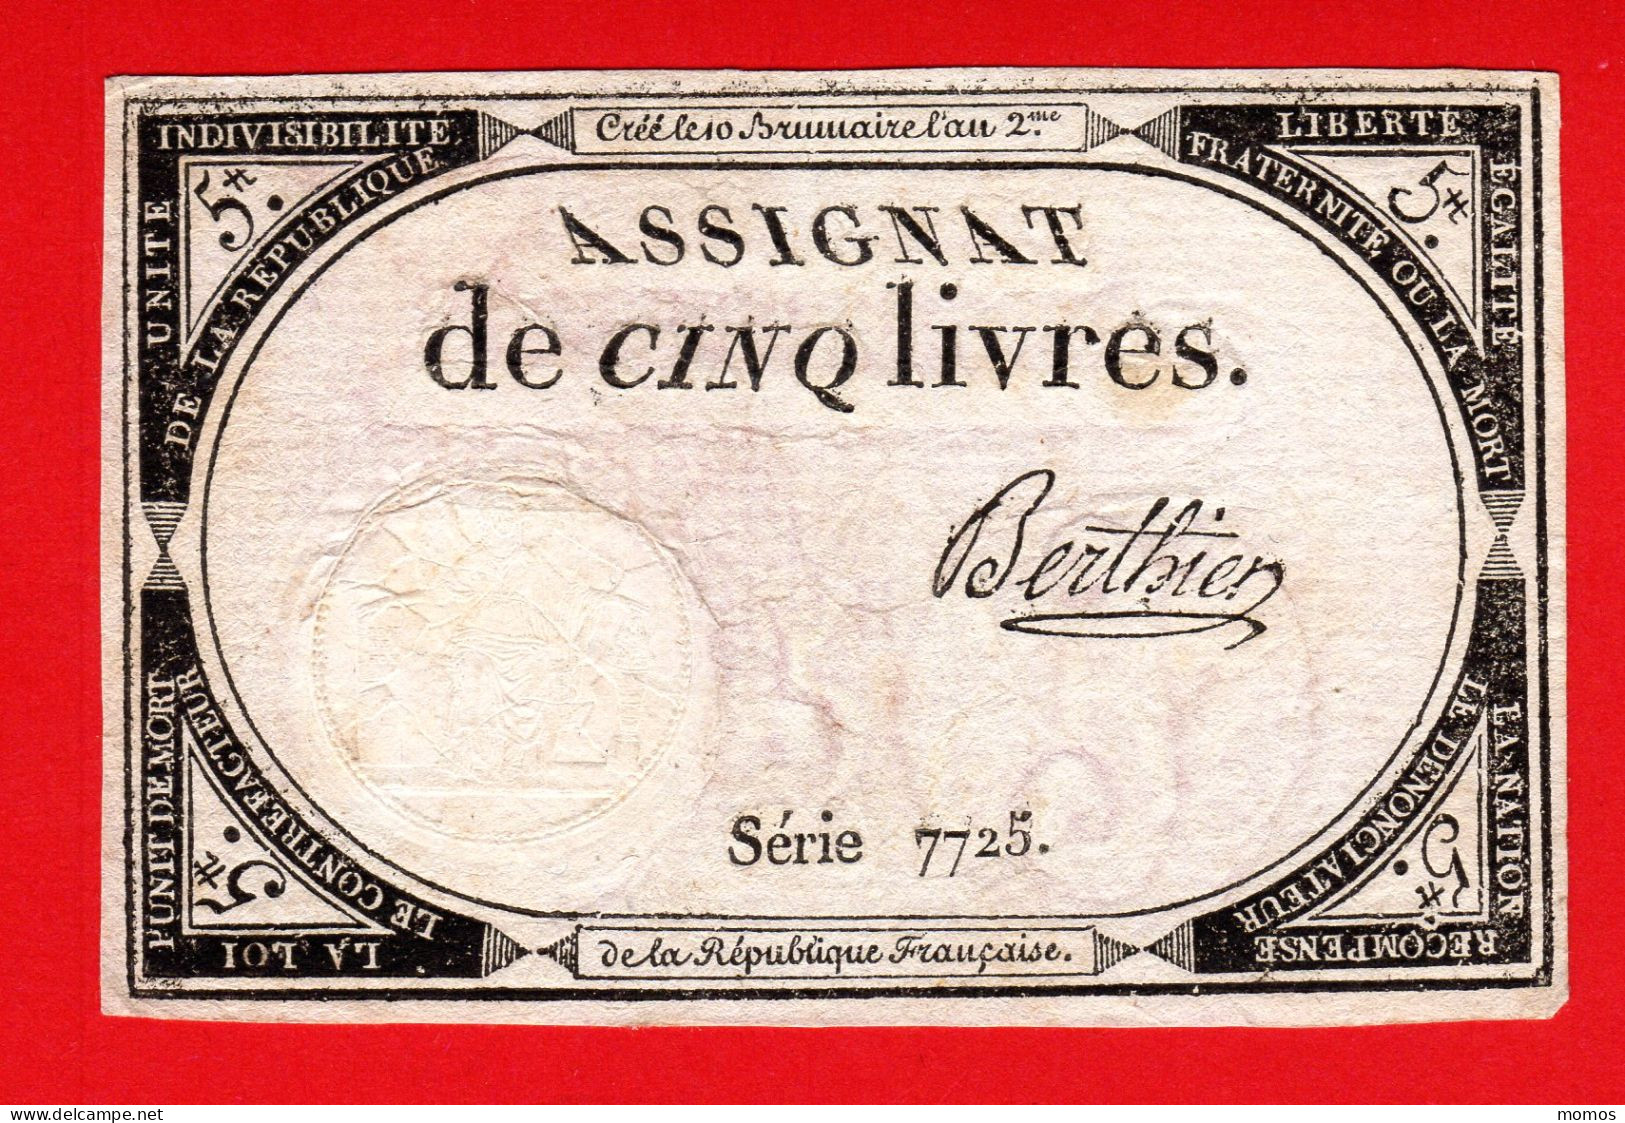 ASSIGNAT DE 5 LIVRES - 10 BRUMAIRE AN 2  (31 OCTOBRE 1793) - BERTHIER - REVOLUTION FRANCAISE - Assignats & Mandats Territoriaux